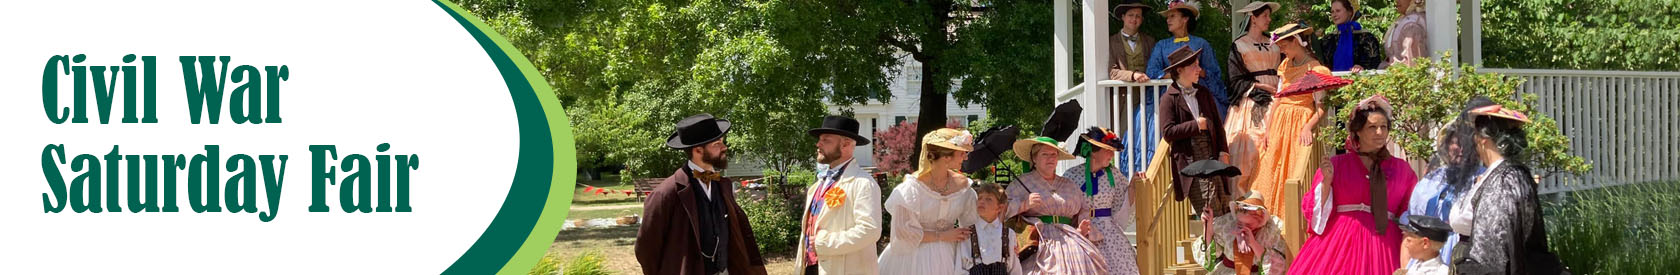 Civil War Saturday Fair  